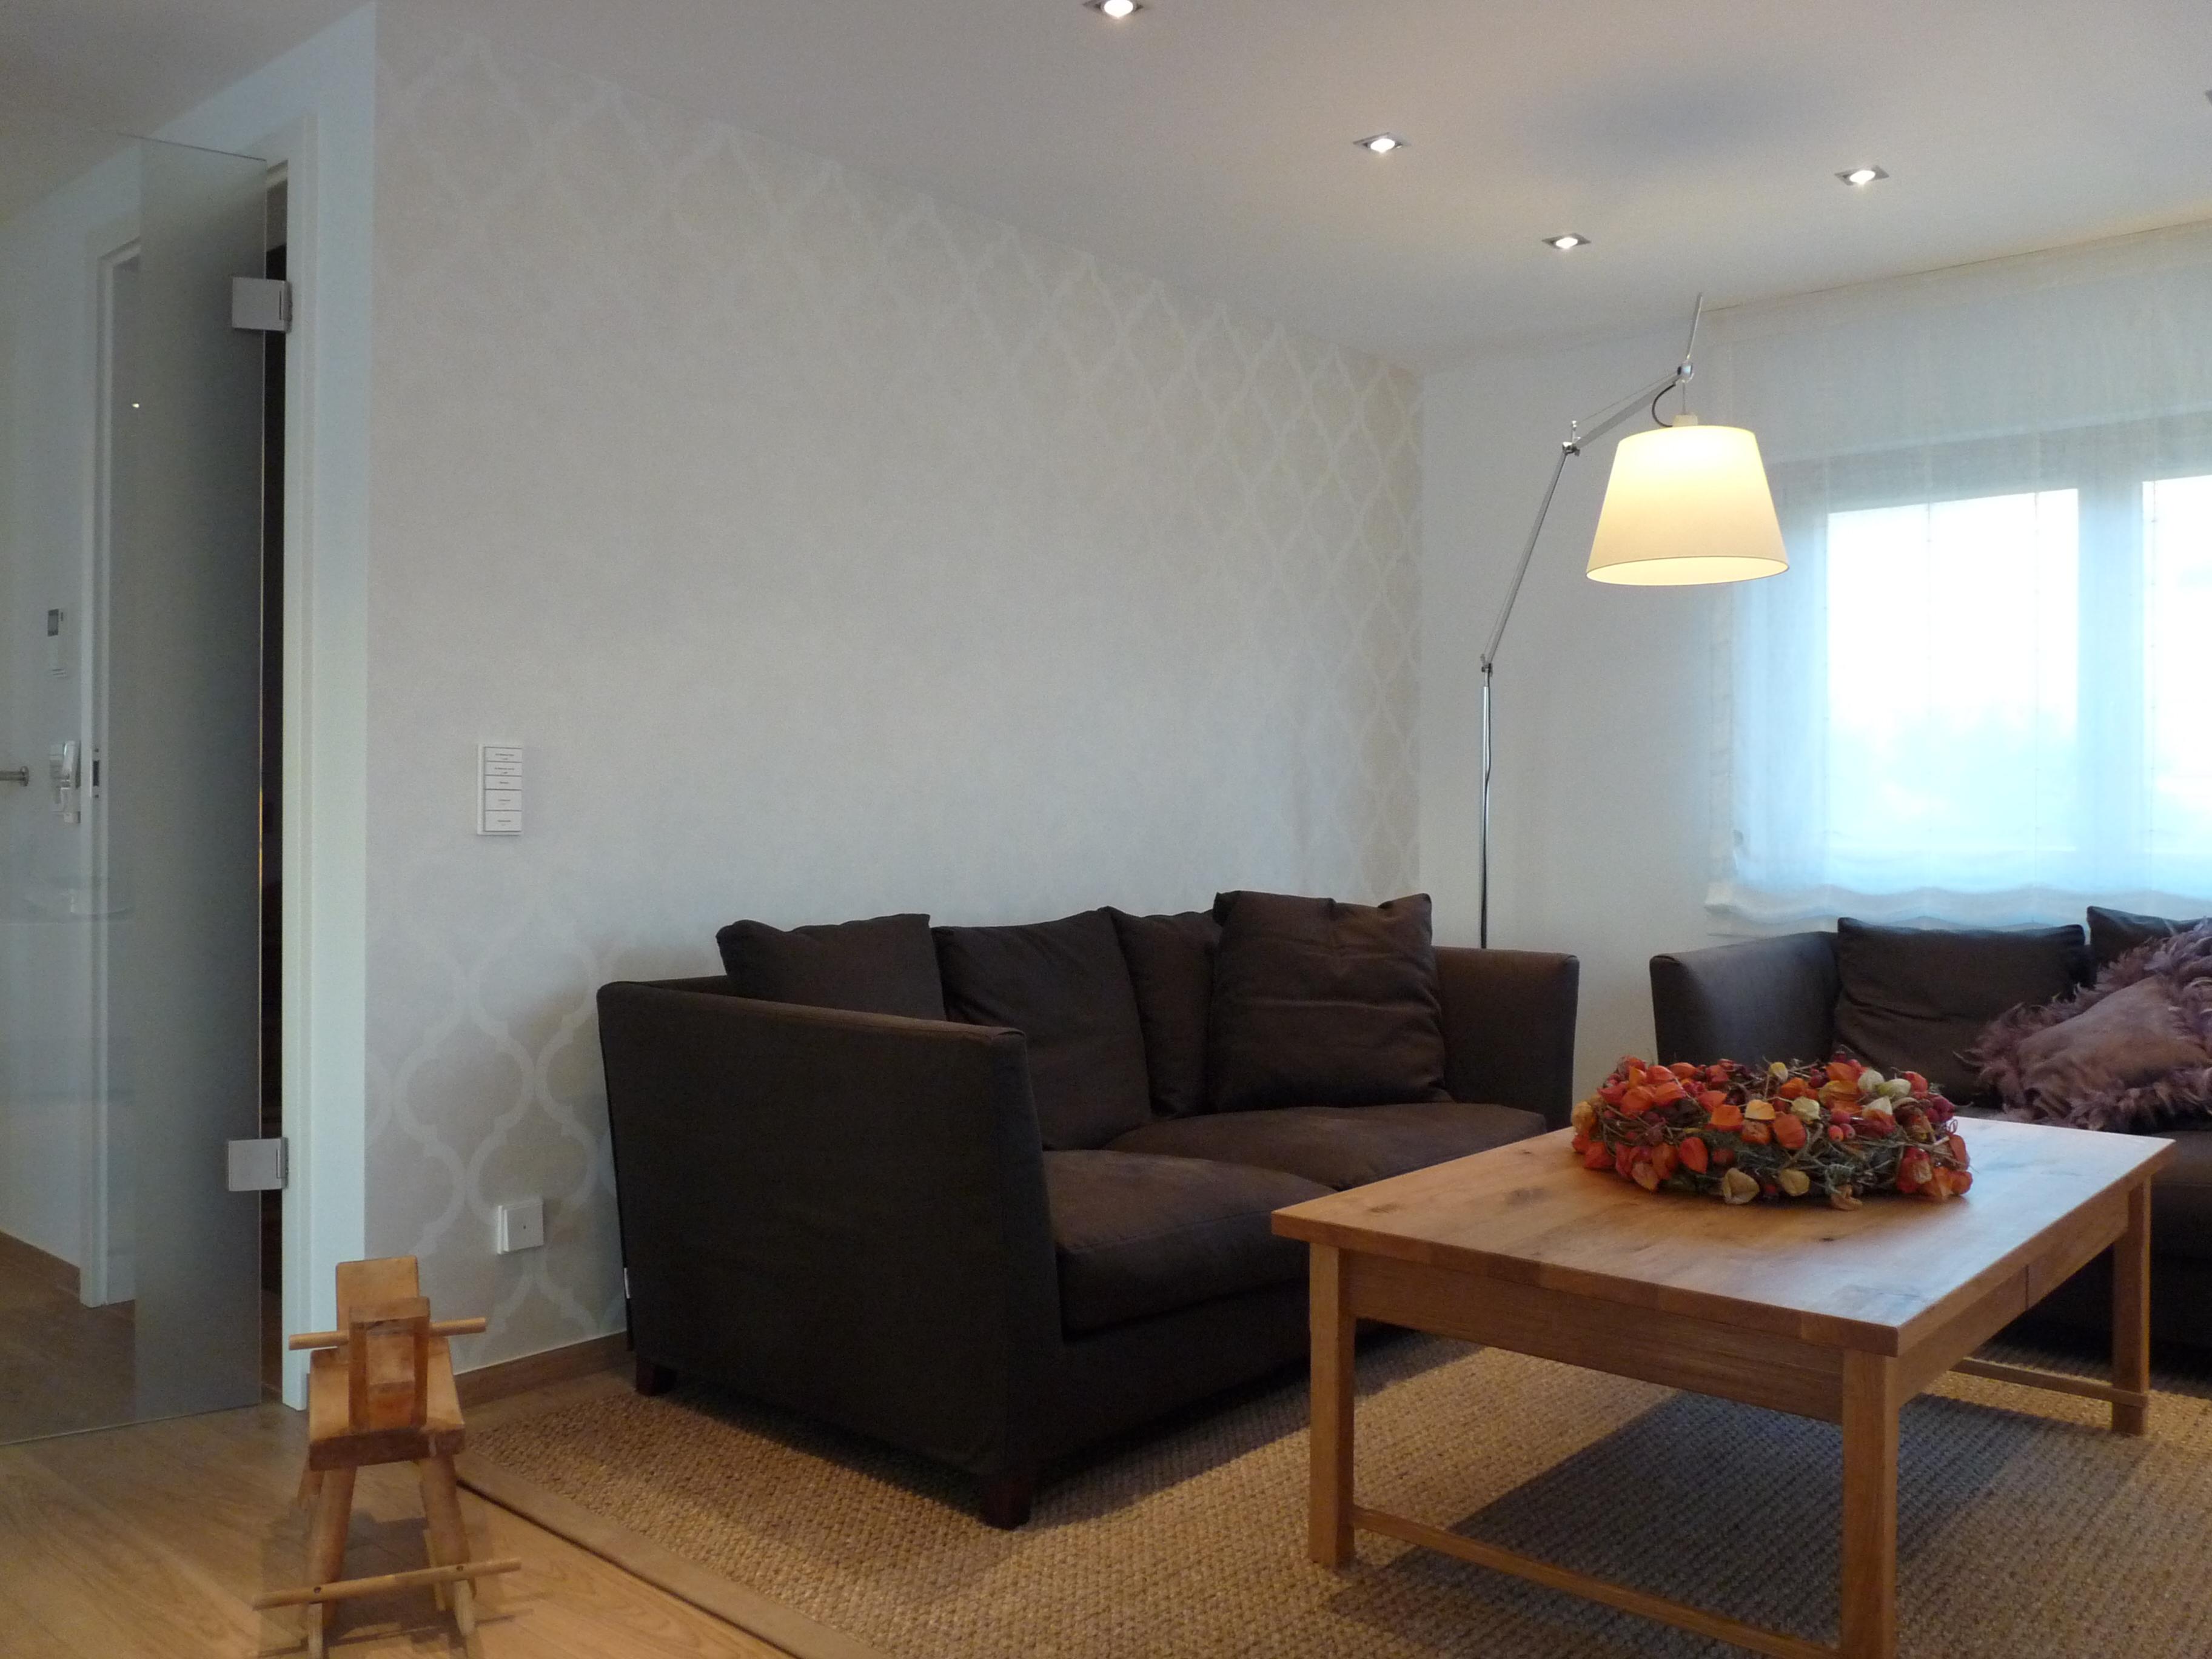 Tapete im Wohnzimmer #couchtisch #mustertapete ©Bieser Raumausstattung